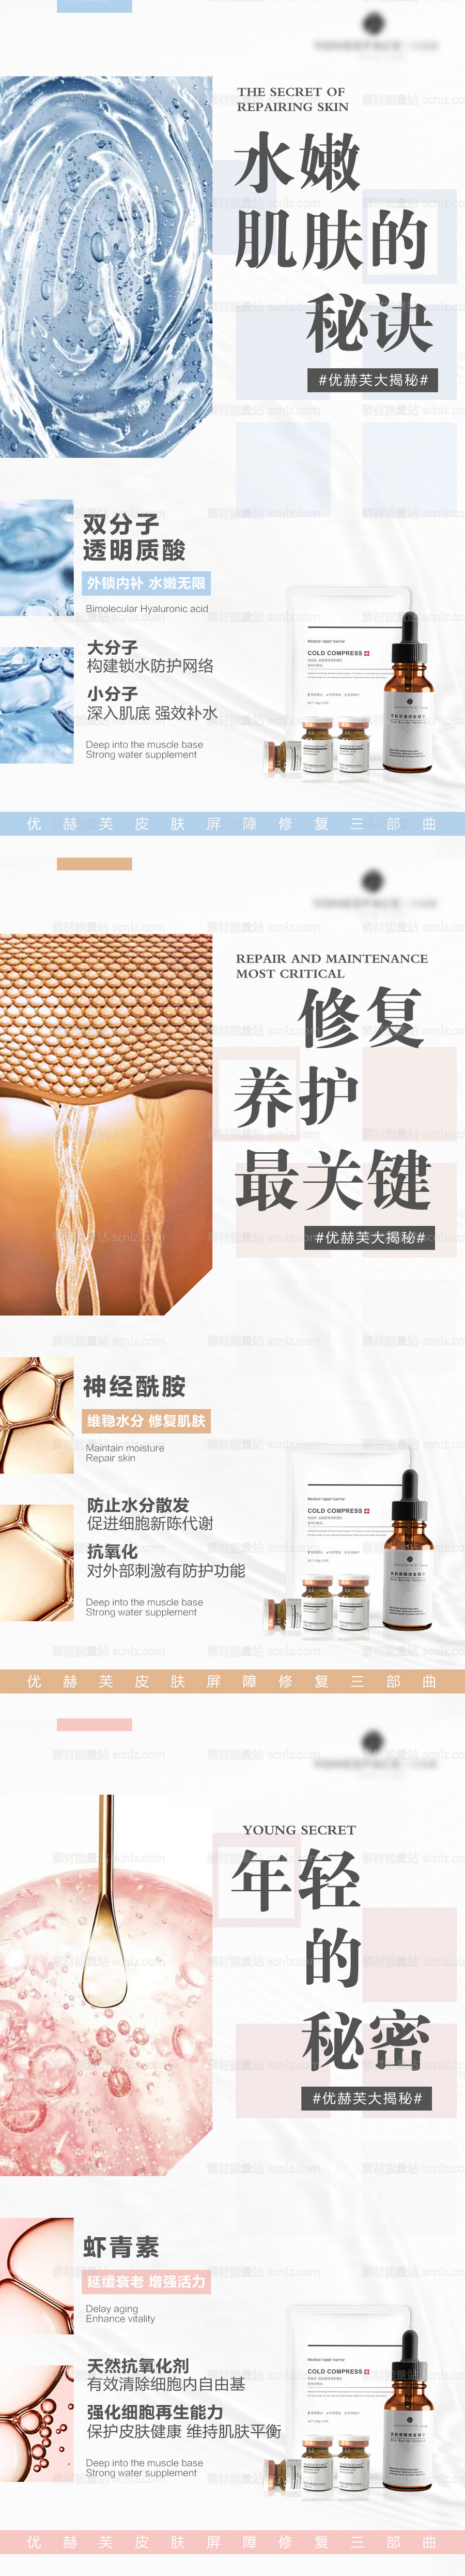 素材能量站-夏日风医用护肤品系列海报分享